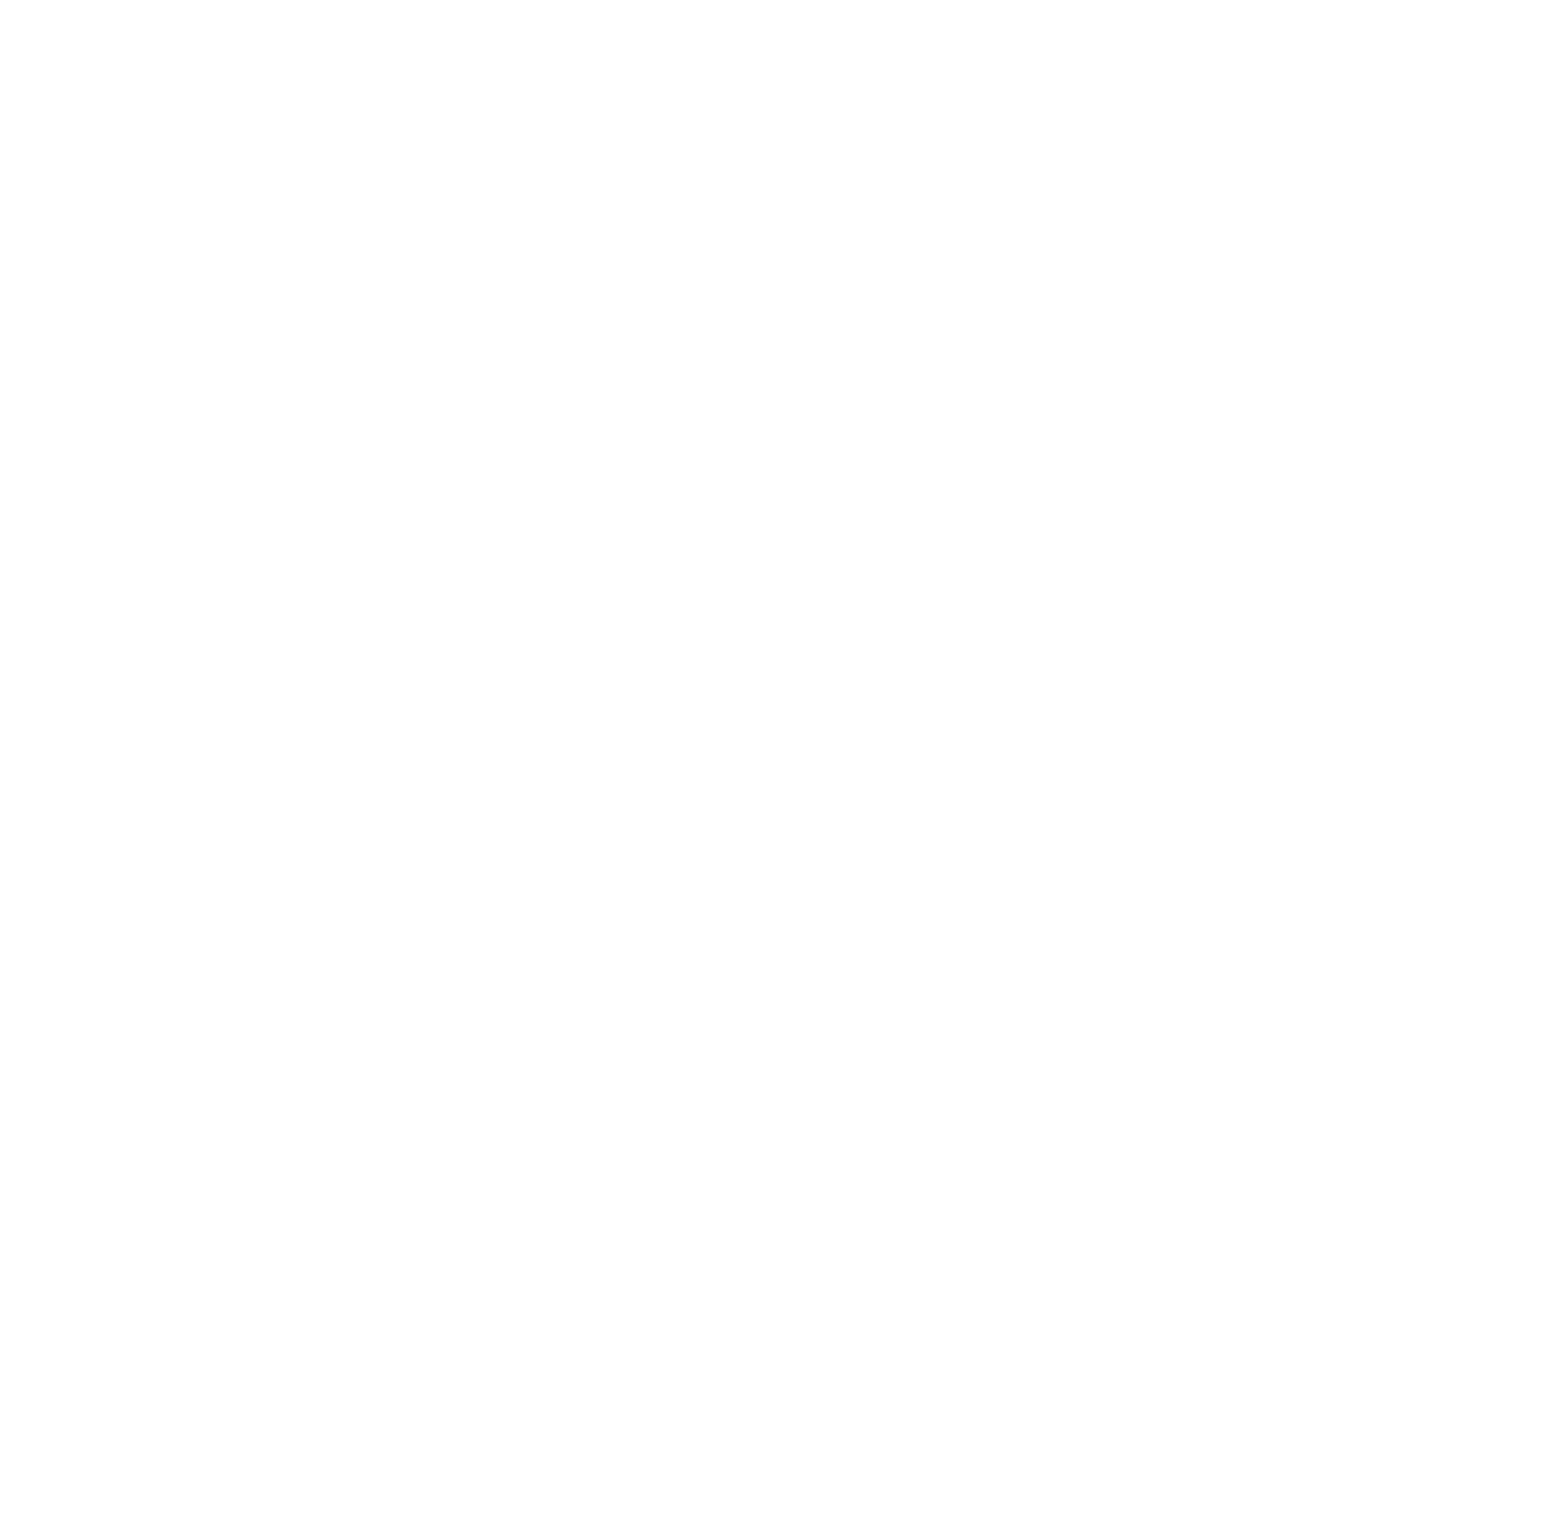 Immunovant logo for dark backgrounds (transparent PNG)